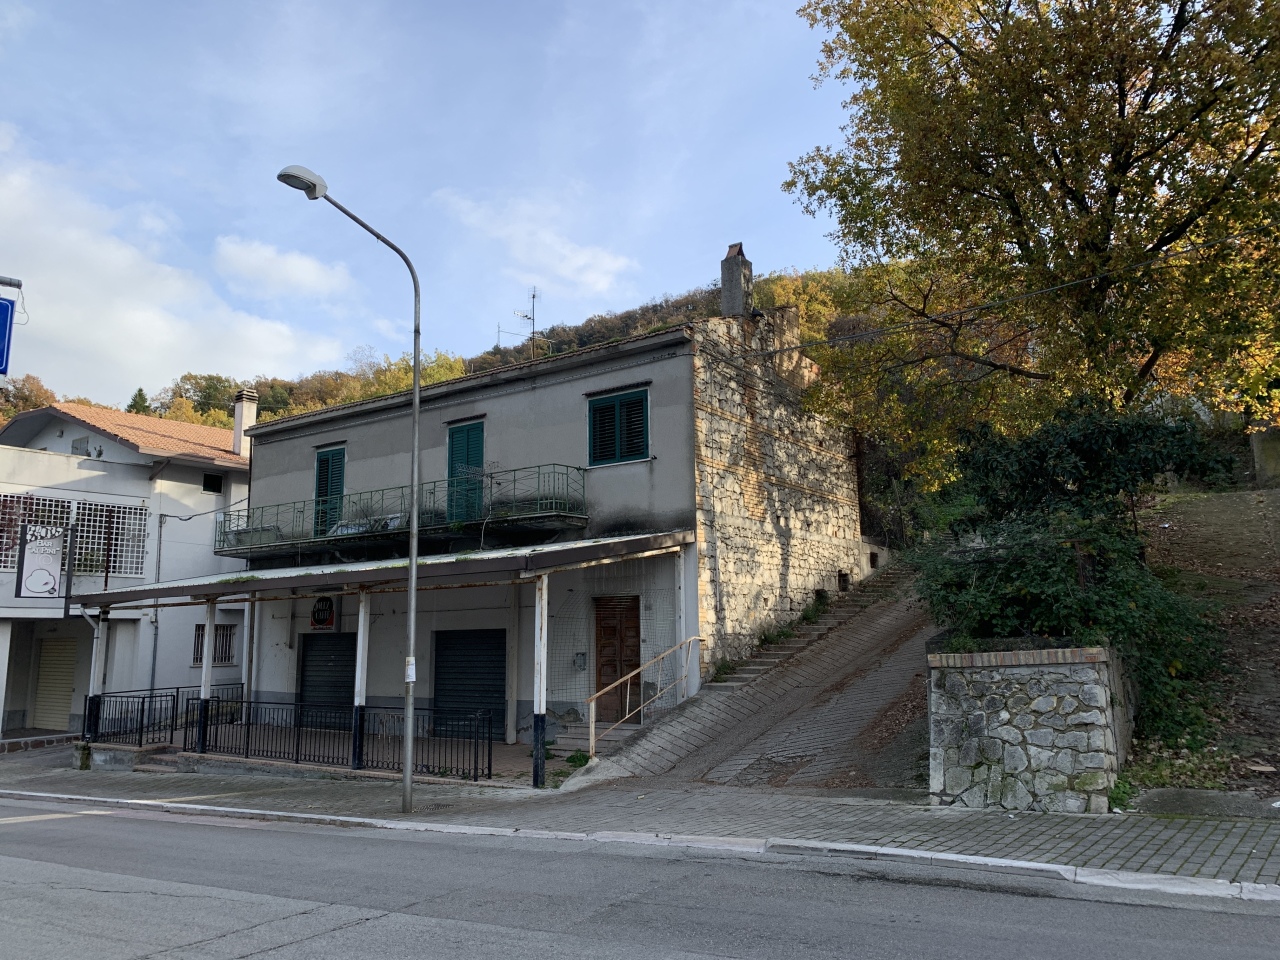 Rustico / Casale in vendita a Altino, 9999 locali, prezzo € 45.000 | PortaleAgenzieImmobiliari.it